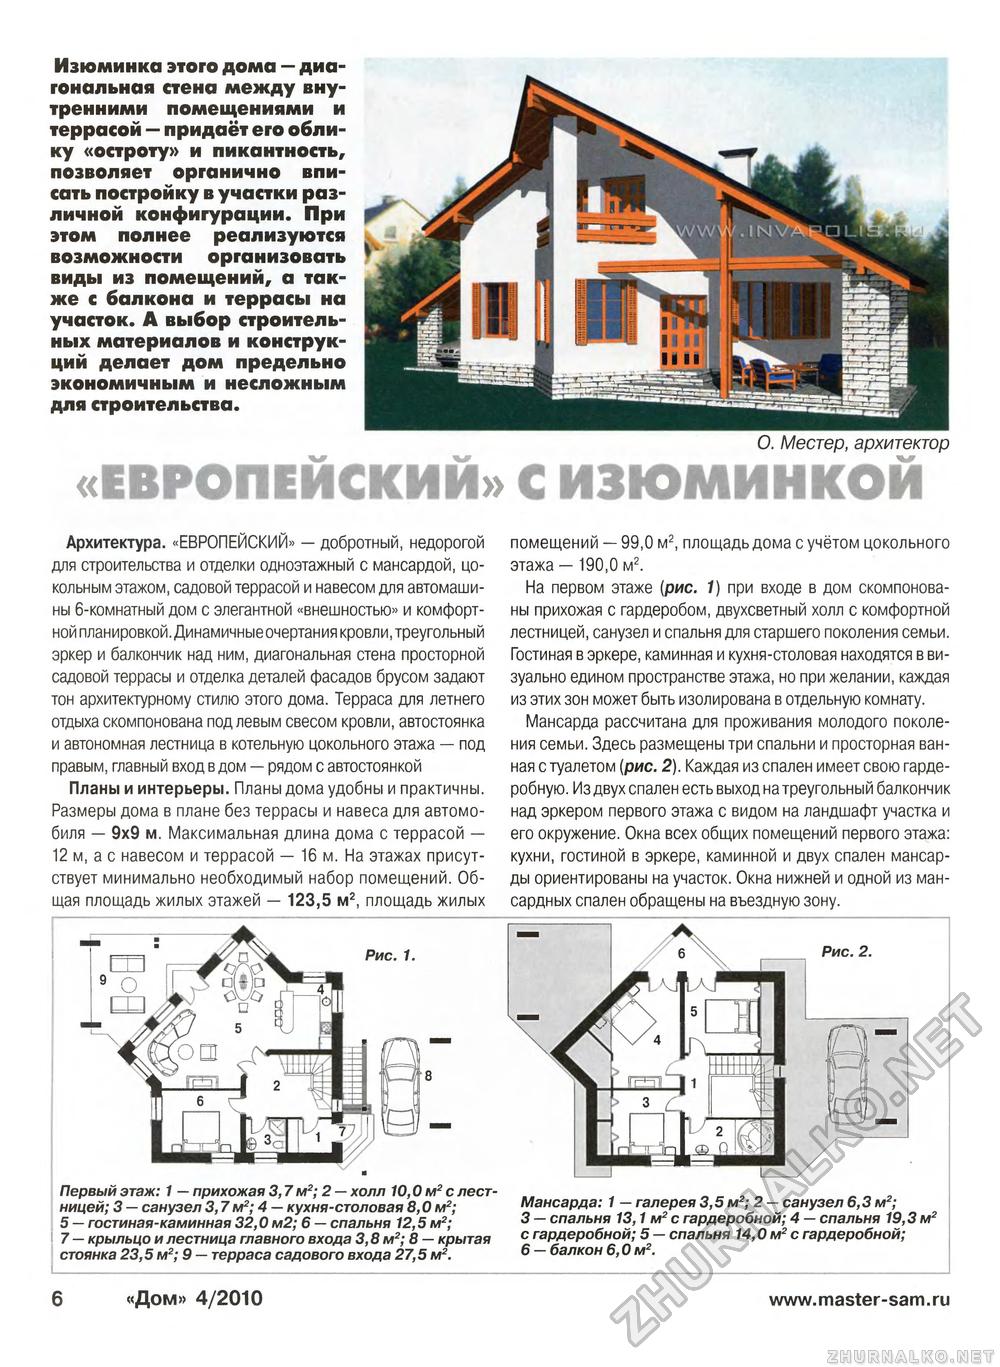 Дом 2010-04, страница 6